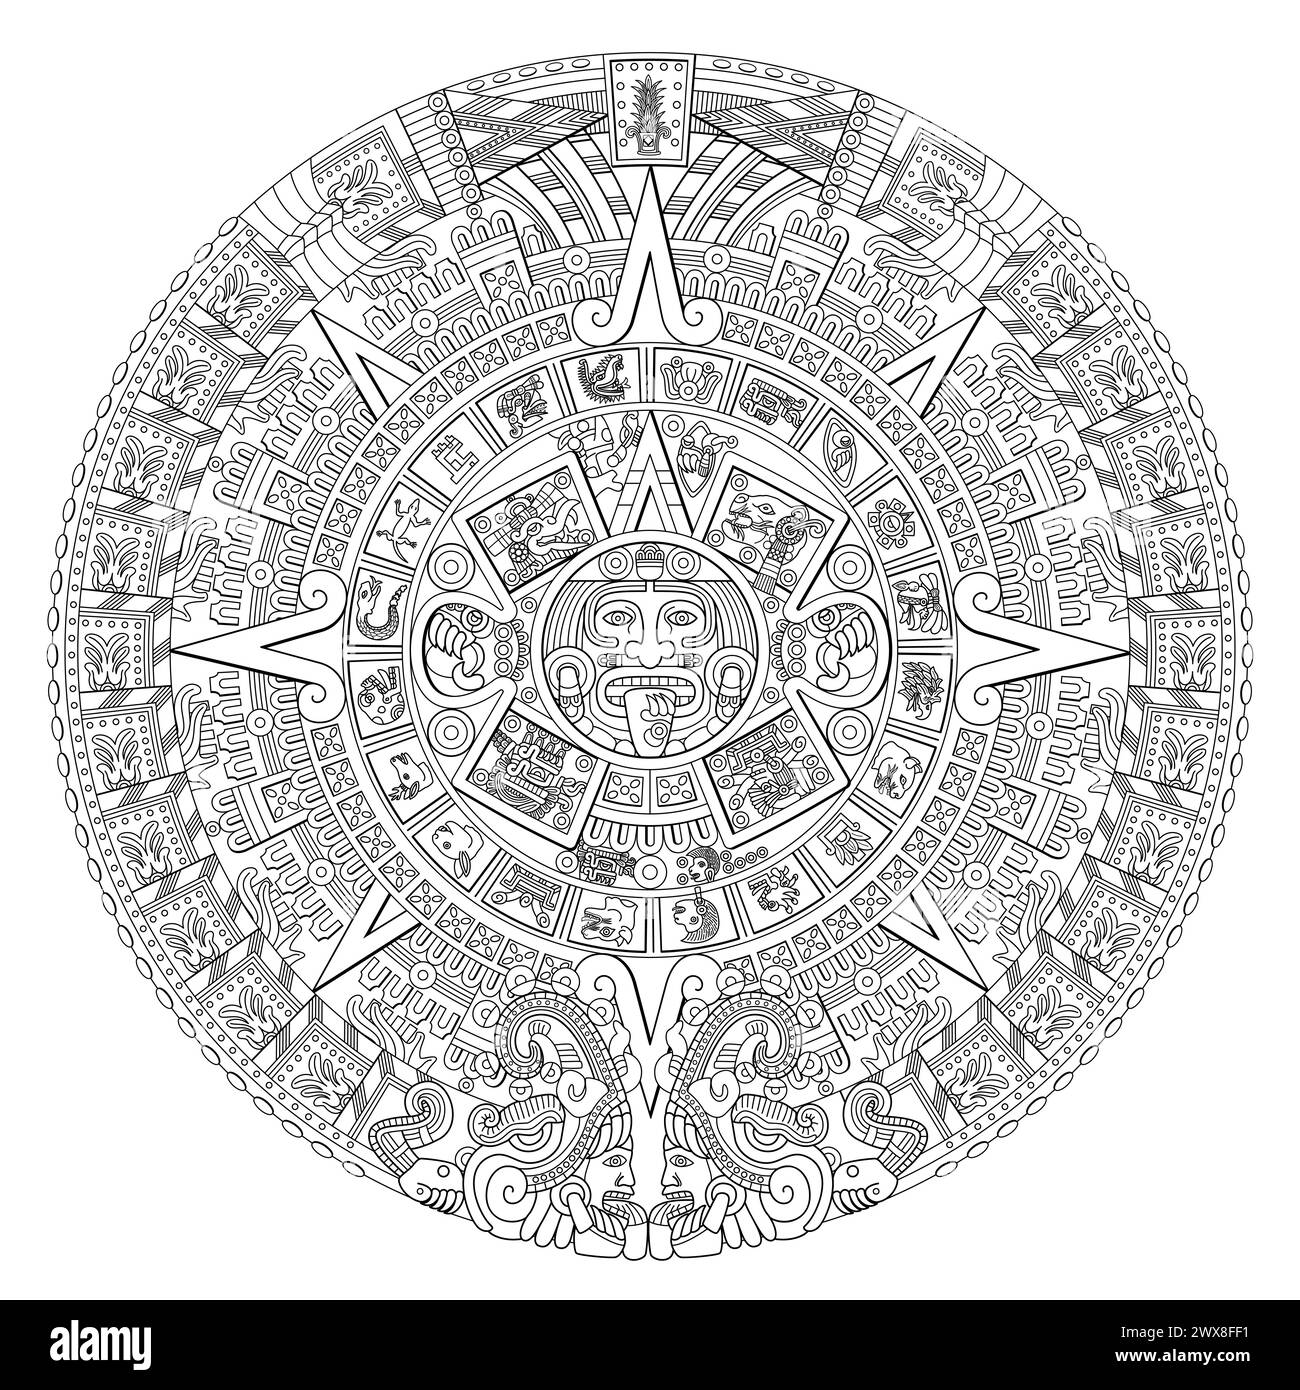 Aztekische Sonnensteine. In der Mitte der Scheibe erscheint die Glyphe Bewegung mit dem Gesicht der Sonnengottheit Tonatiuh, umgeben von den 20-Tage-Zeichen. Stockfoto